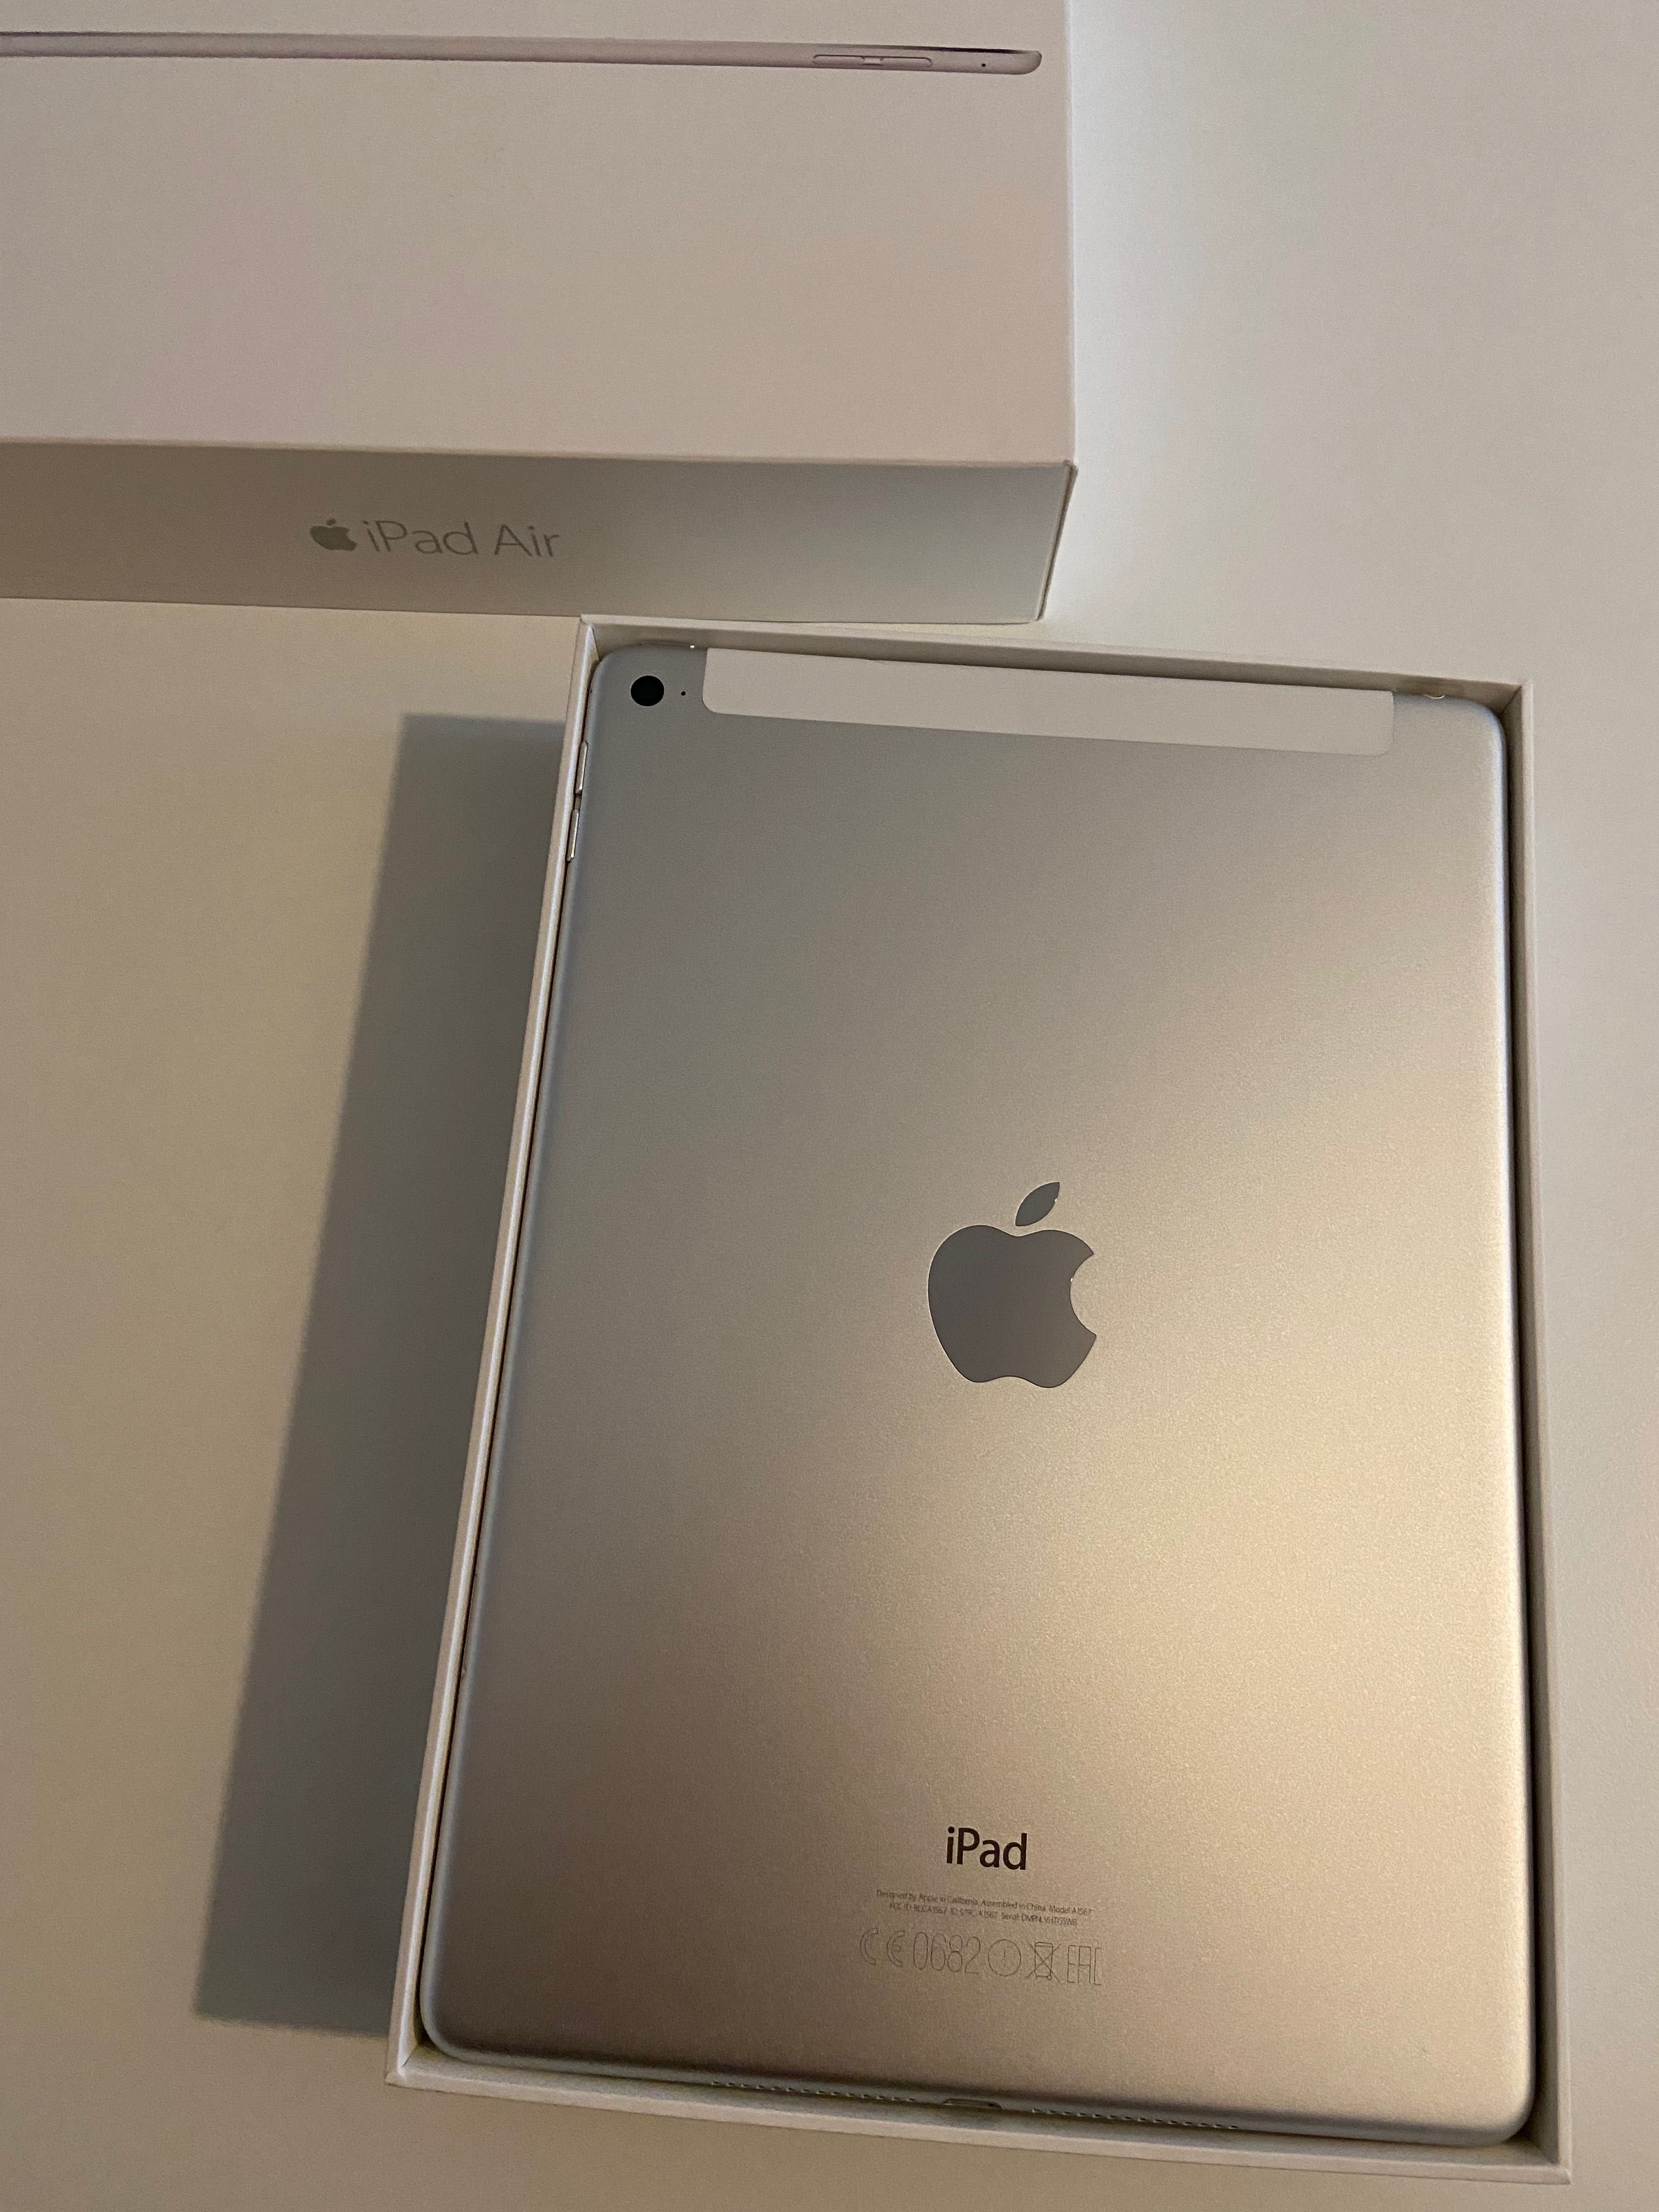 iPad Air 16GB prateado